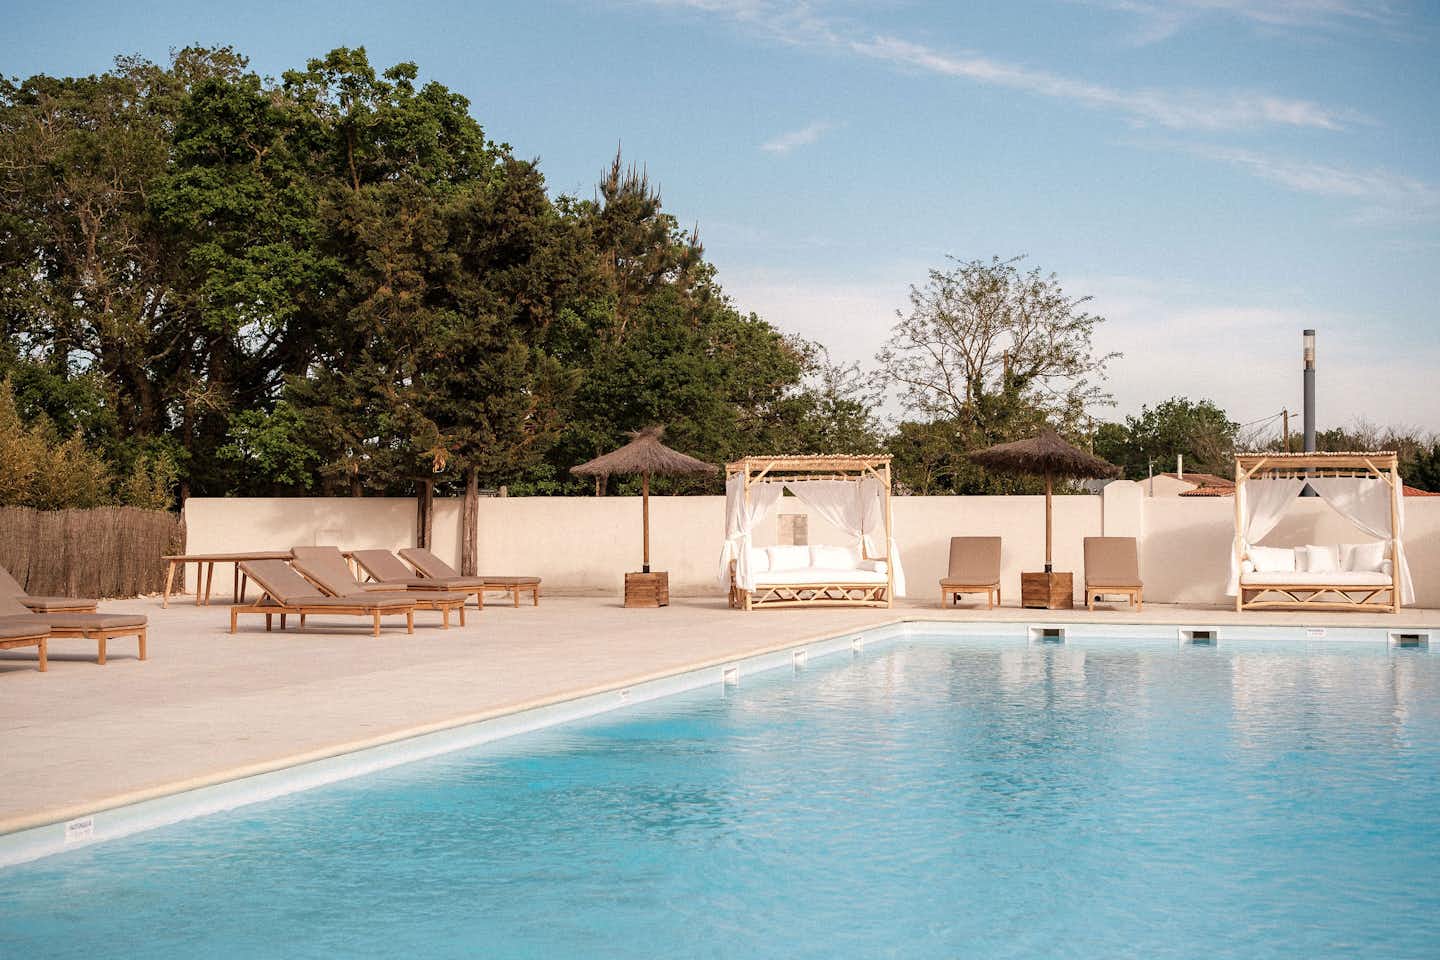  Inspire Villages Marennes Oléron  - Pool im Freien mit Liegestühlen und Sonnenschirmen